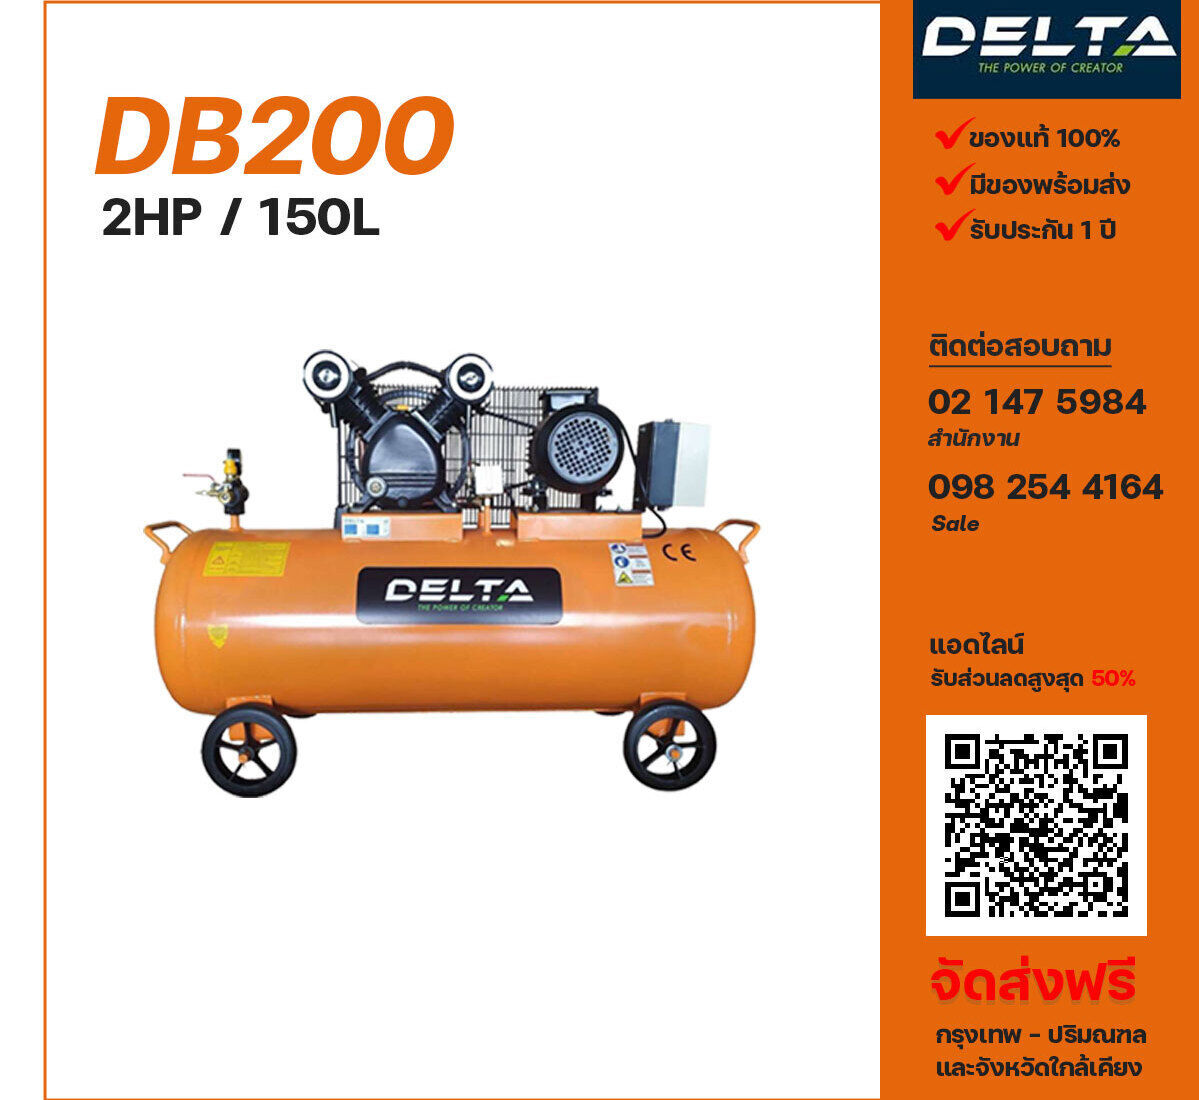 ปั๊มลมเดลต้า DELTA DB200 380V ปั๊มลมลูกสูบ ขนาด 2 สูบ 2 แรงม้า 150 ลิตร DELTA พร้อมมอเตอร์ ไฟ 380V ส่งฟรี กรุงเทพฯ-ปริมณฑล รับประกัน 1 ปี